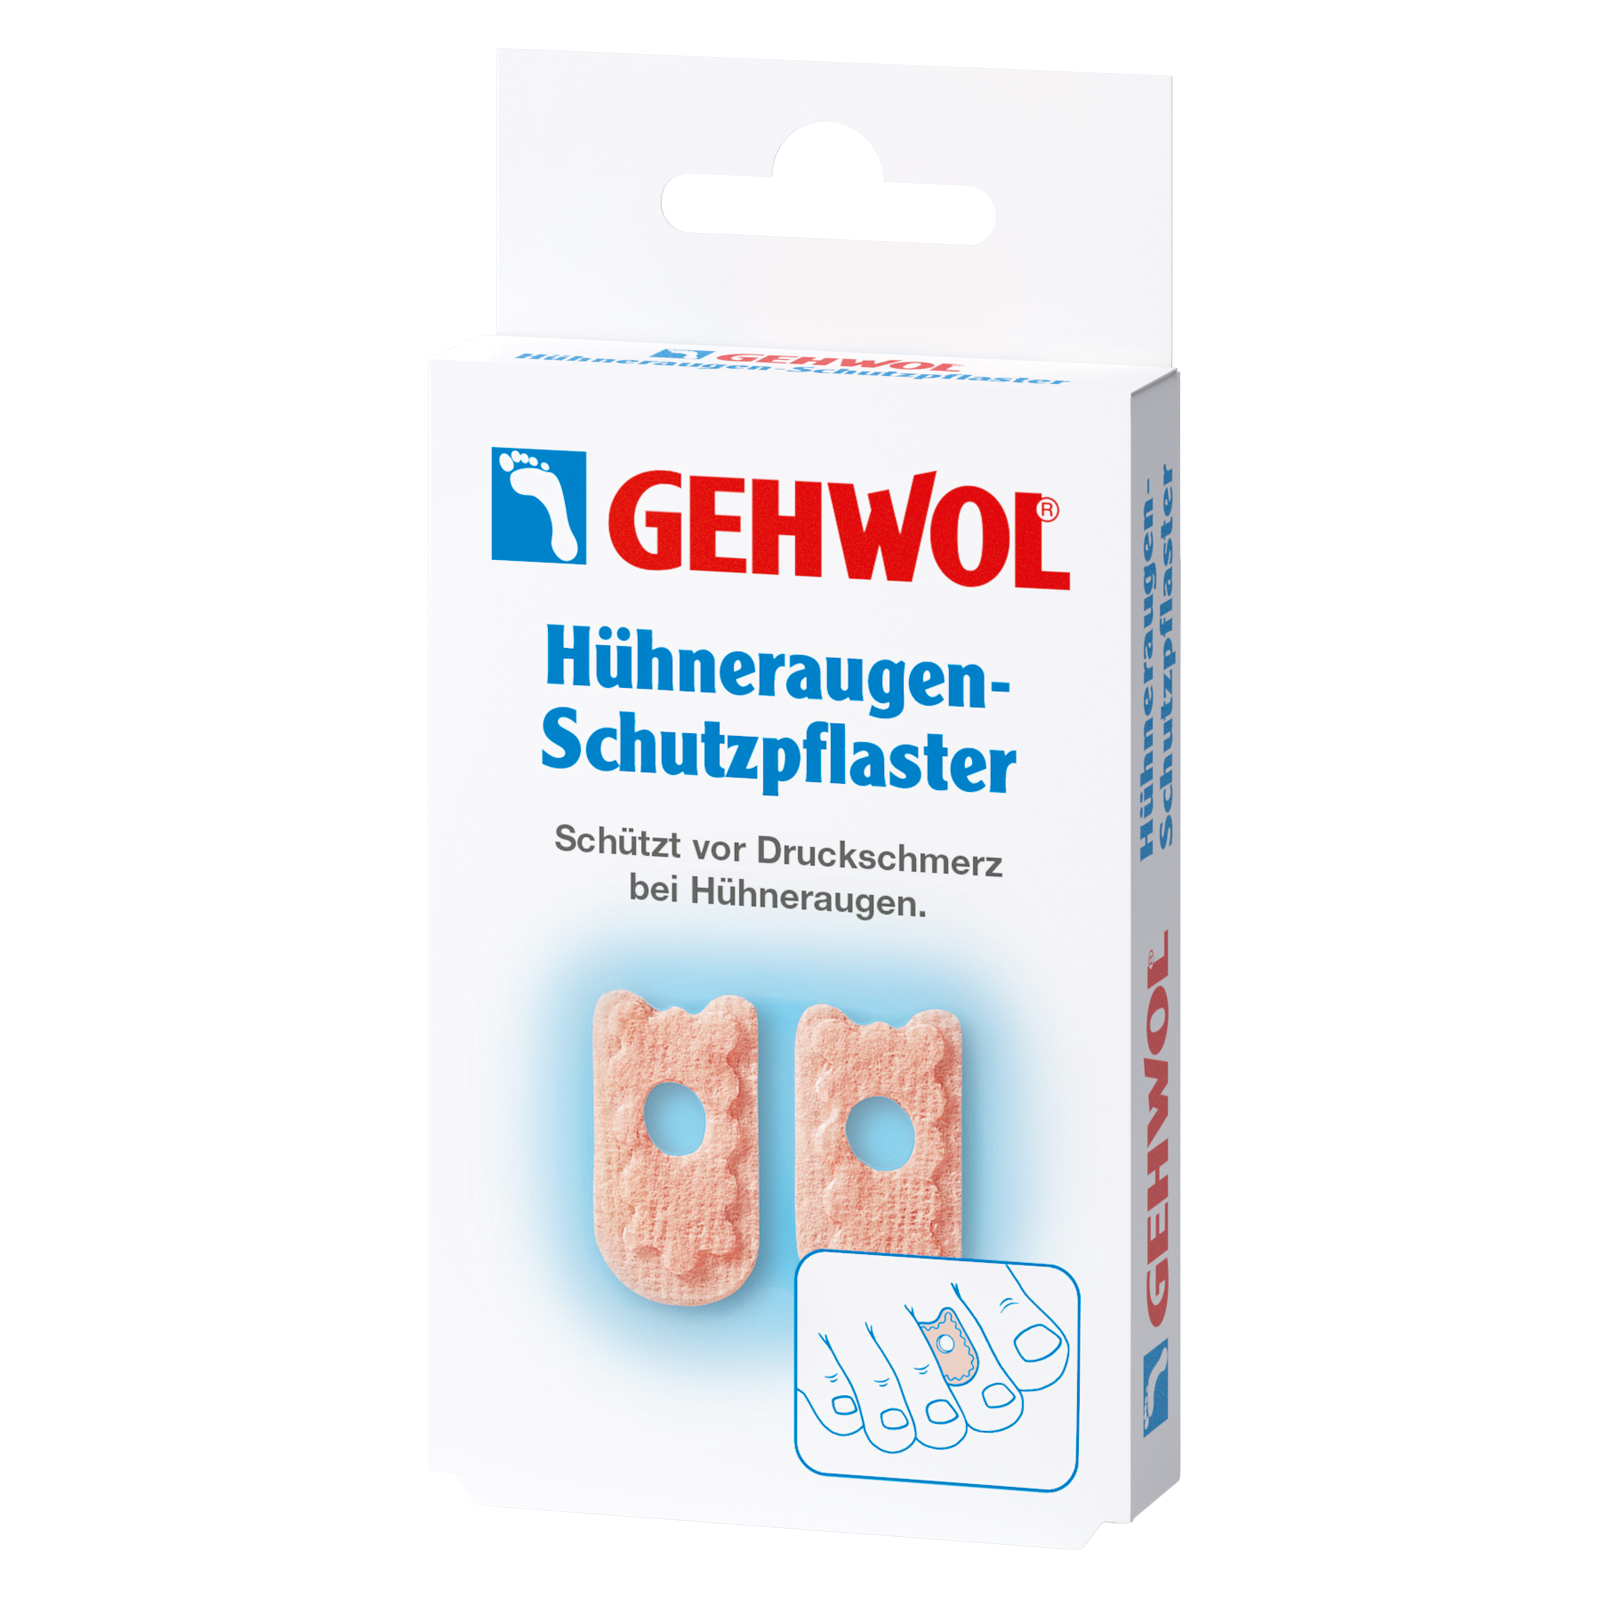 © Gehwol Gerlach Hühneraugen-Schutzpflaster